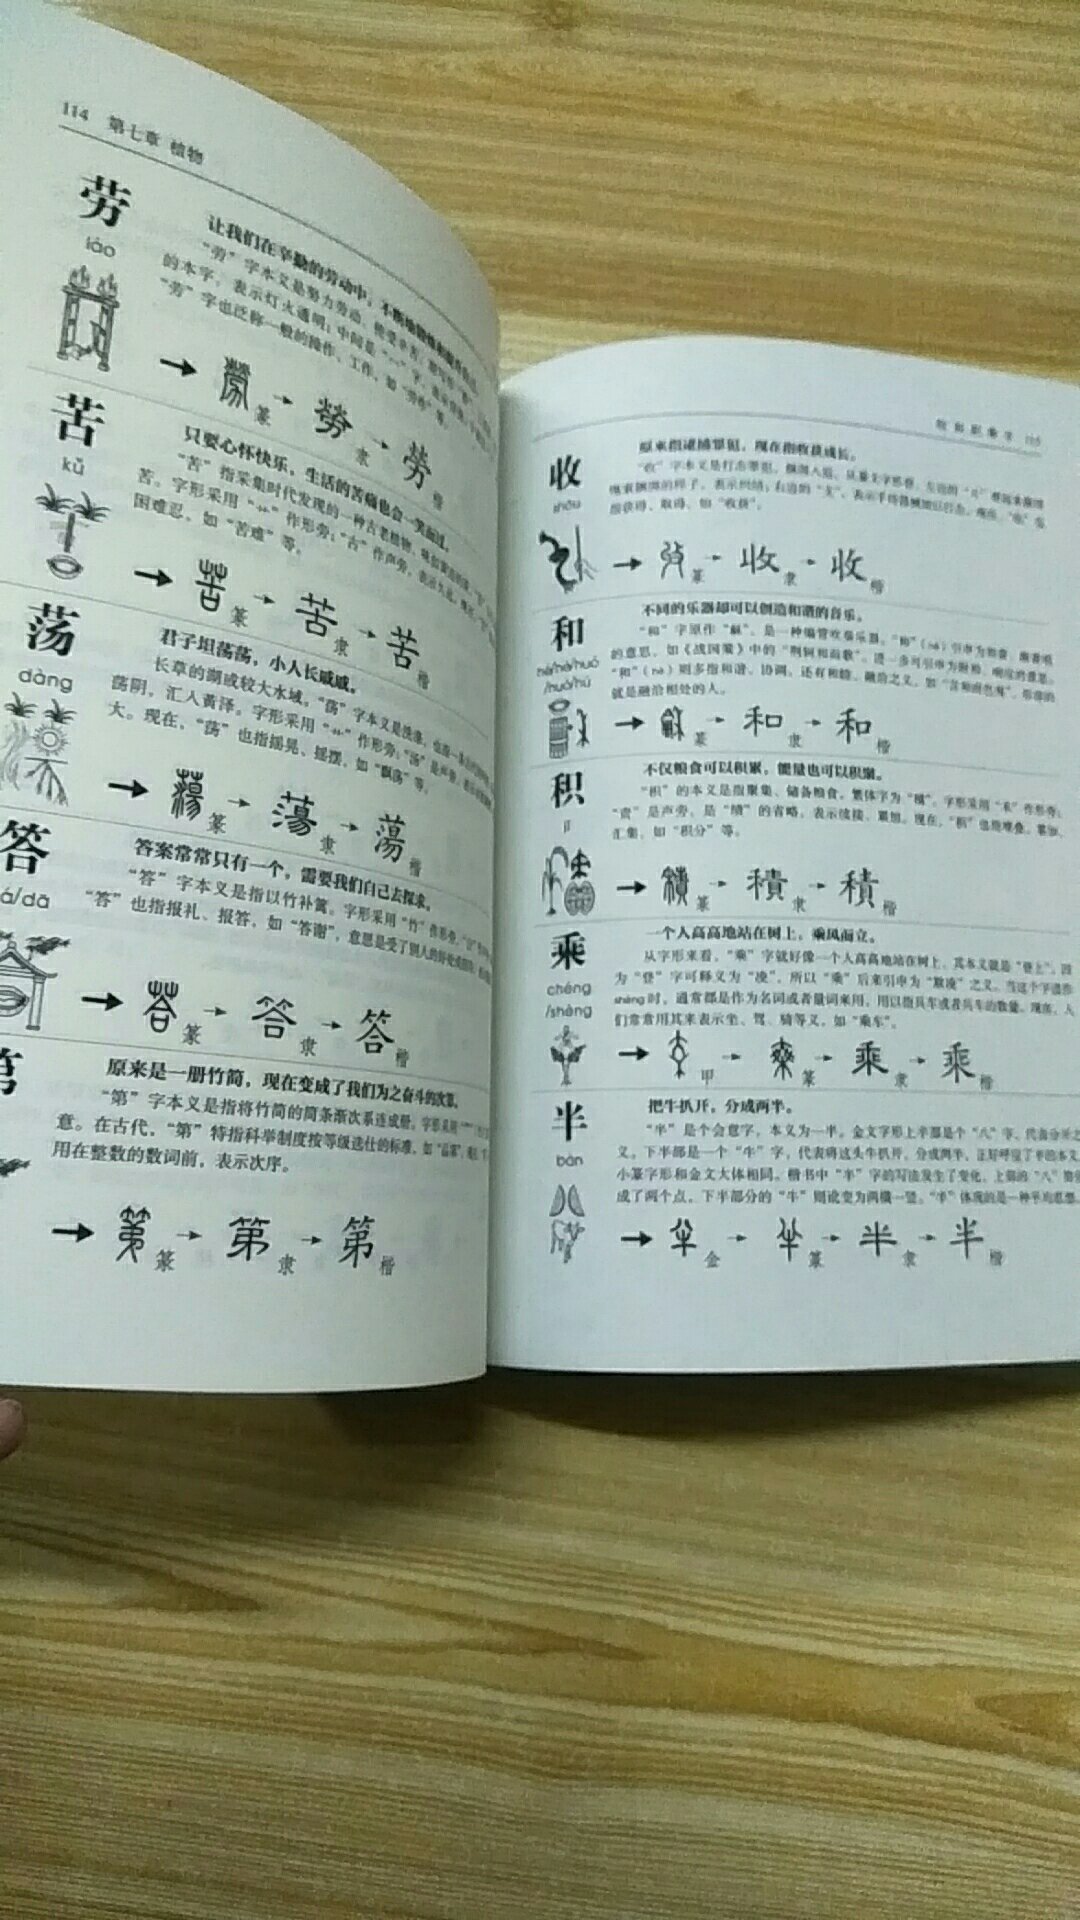 孩子说看了知道古时候的字和现在汉字的变化了，喜欢看。